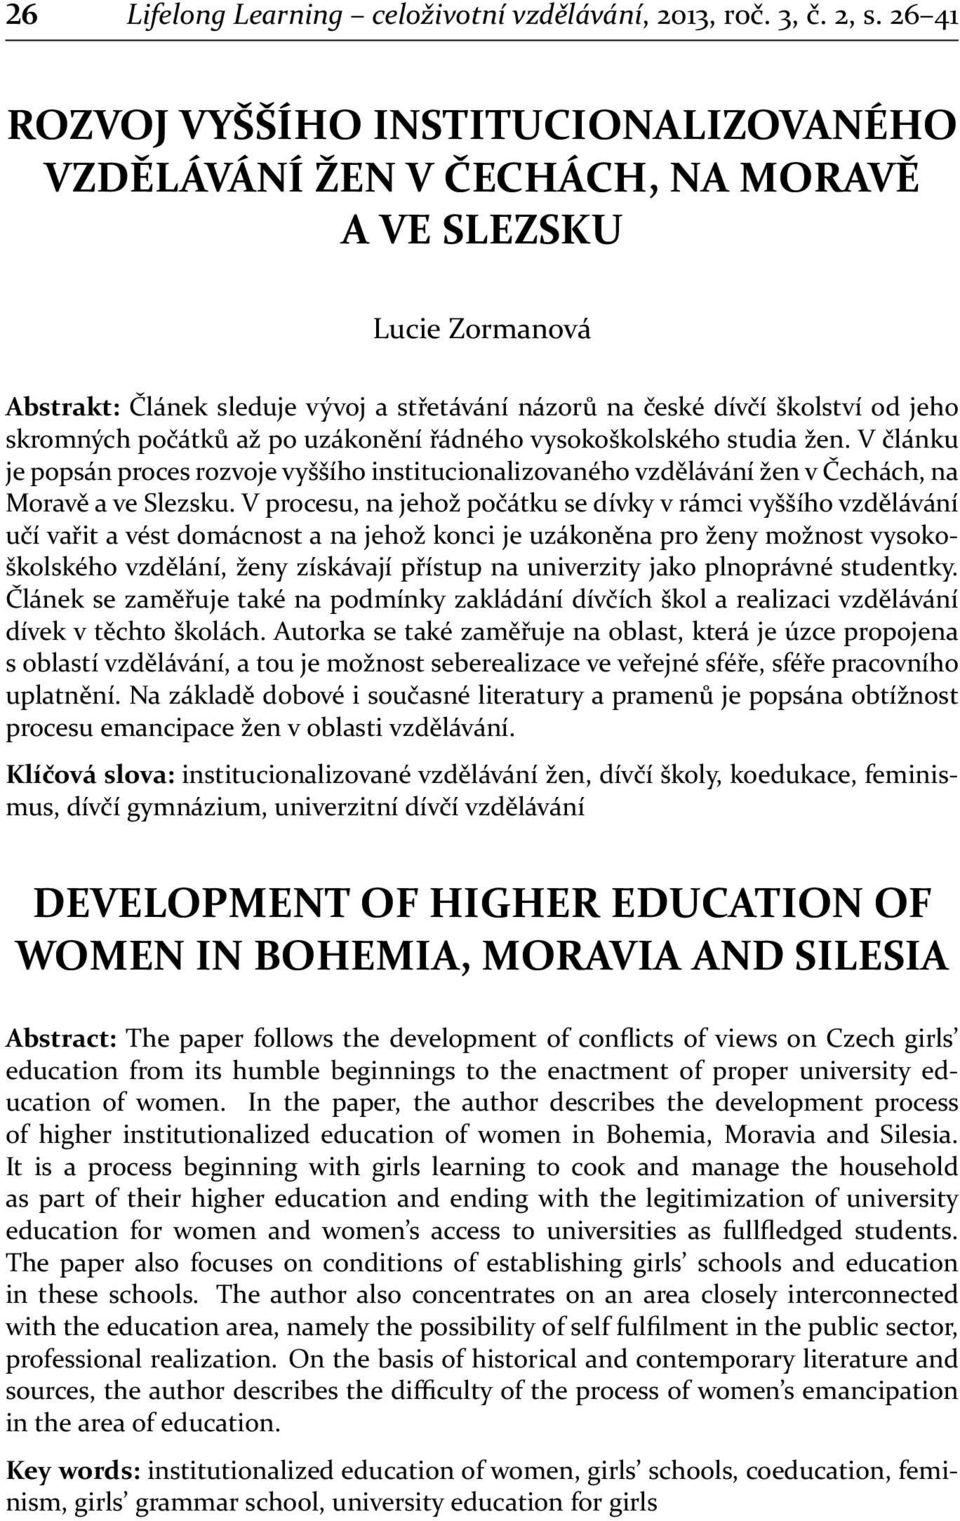 skromných počátků až po uzákonění řádného vysokoškolského studia žen. V článku je popsán proces rozvoje vyššího institucionalizovaného vzdělávání žen v Čechách, na Moravě a ve Slezsku.